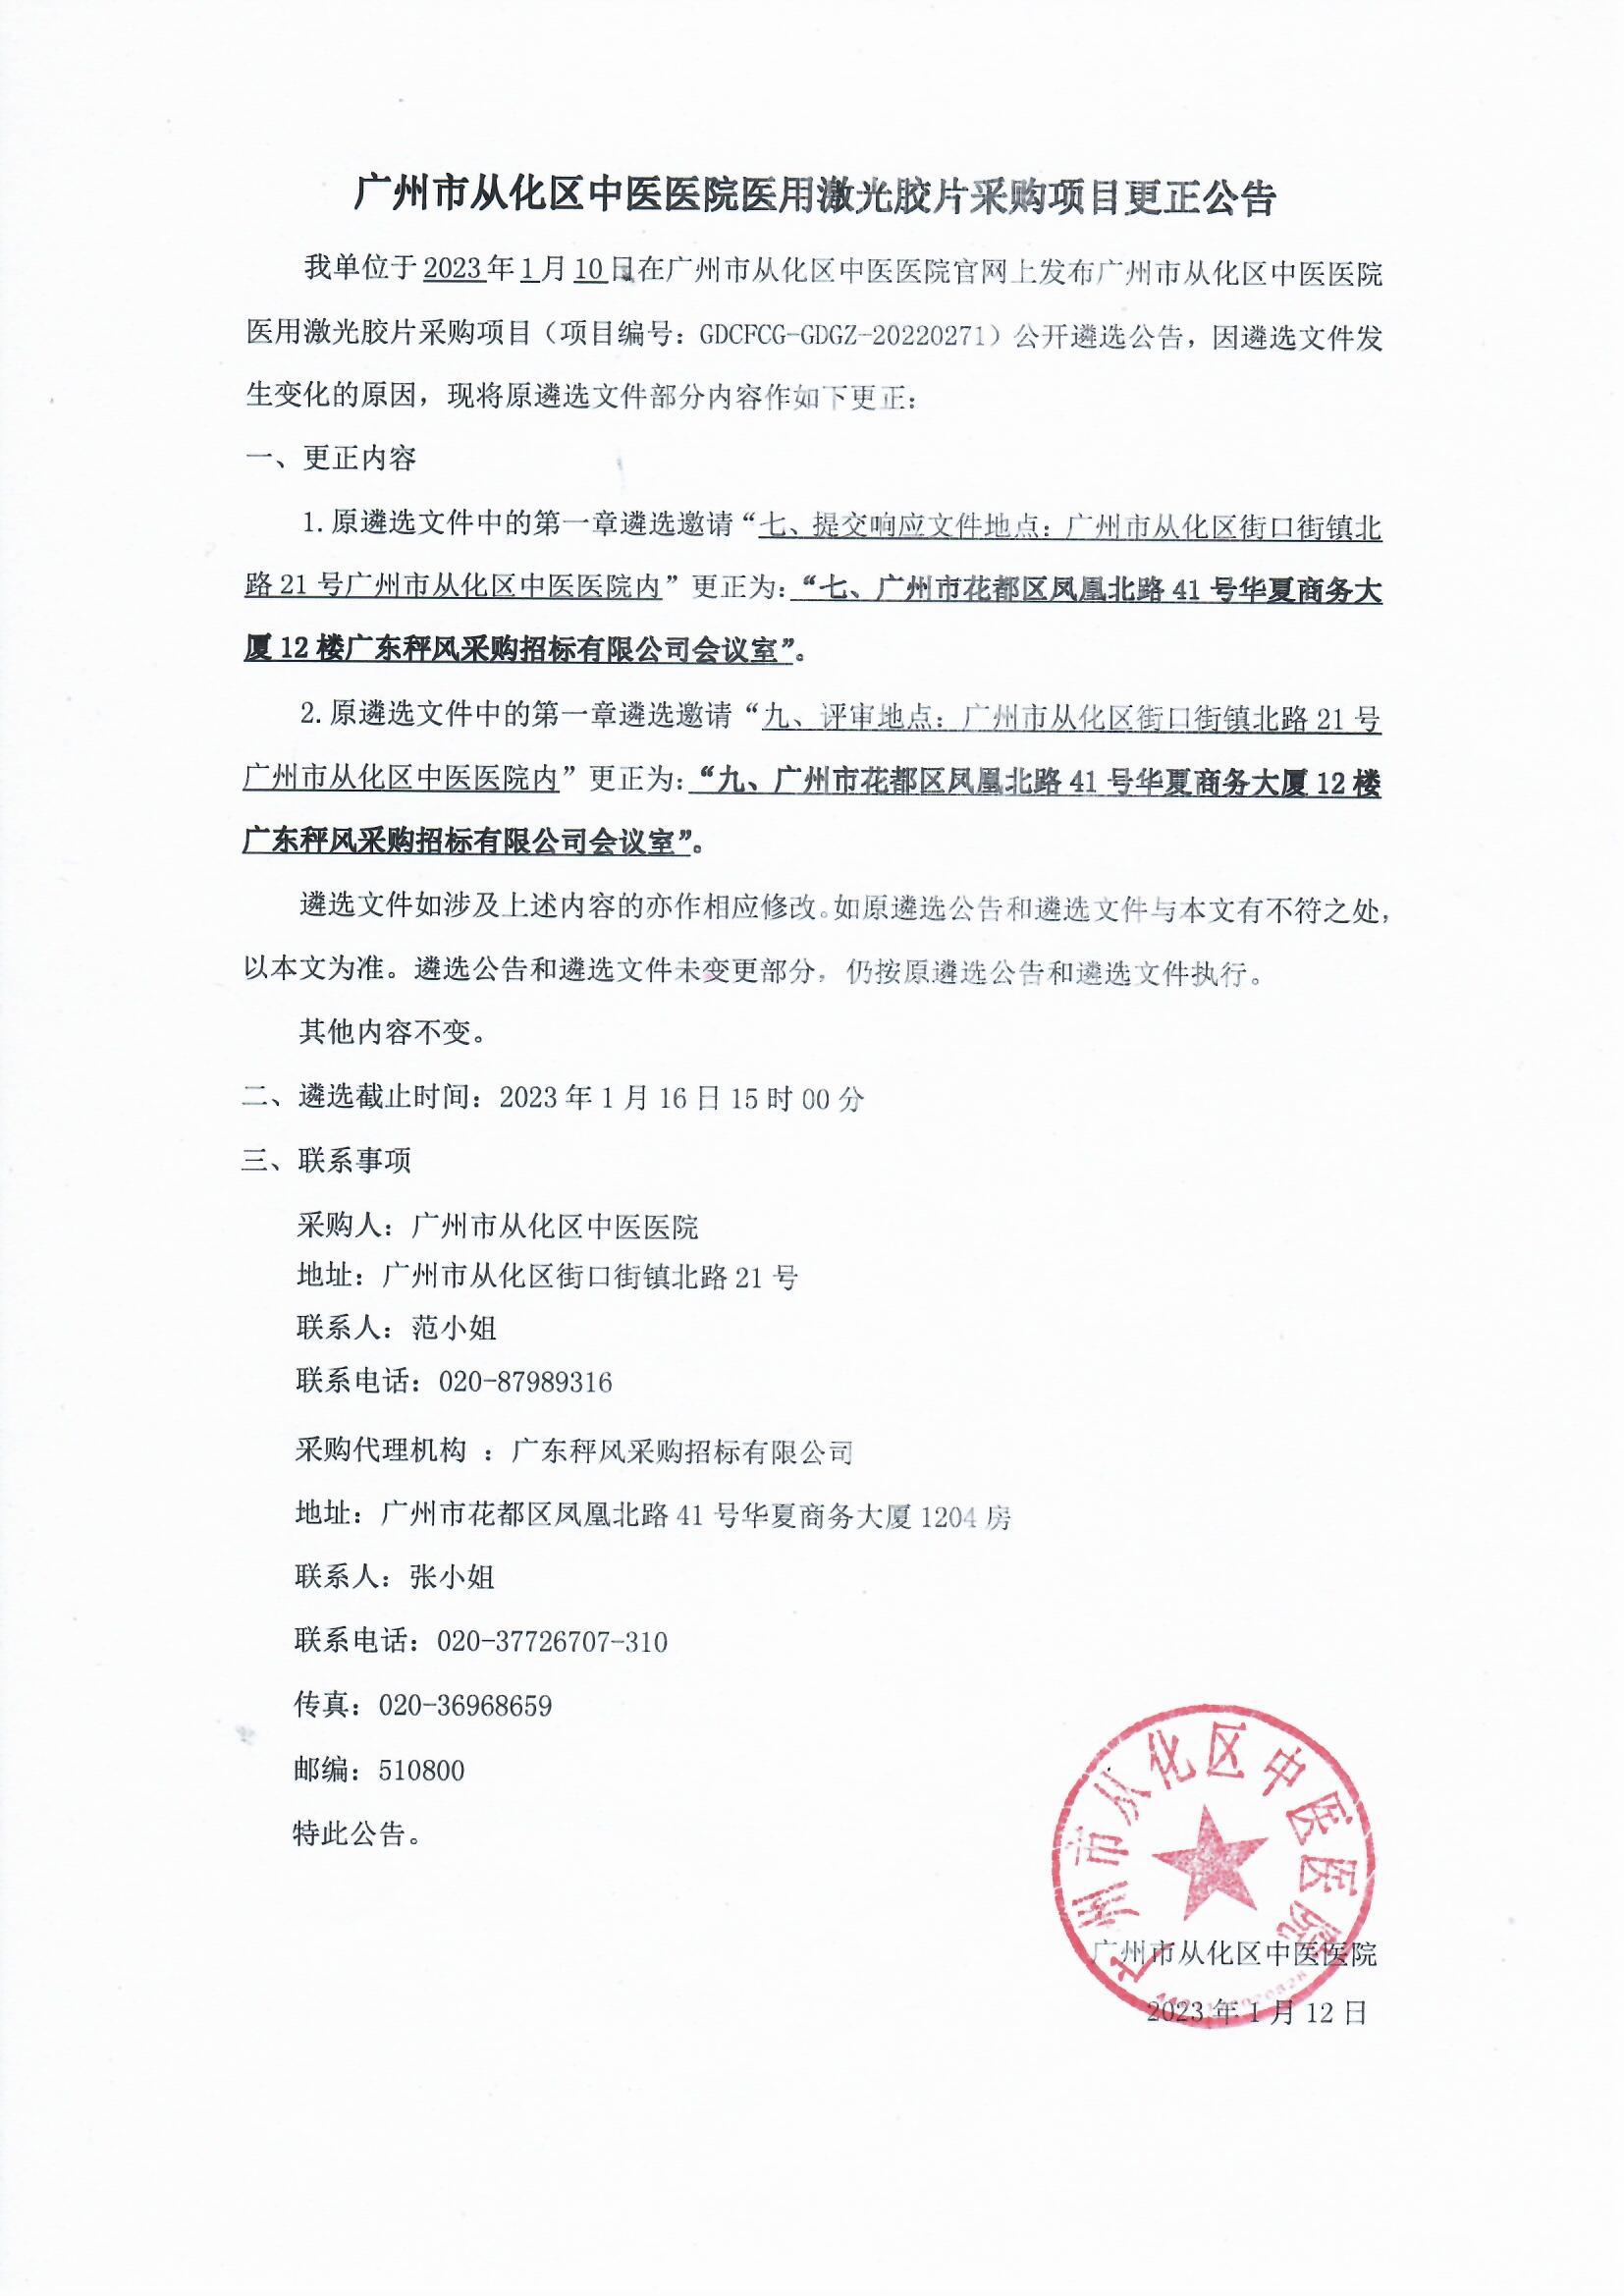 广州市从化区中医医院医用激光胶片采购项目更正公告(1).jpg